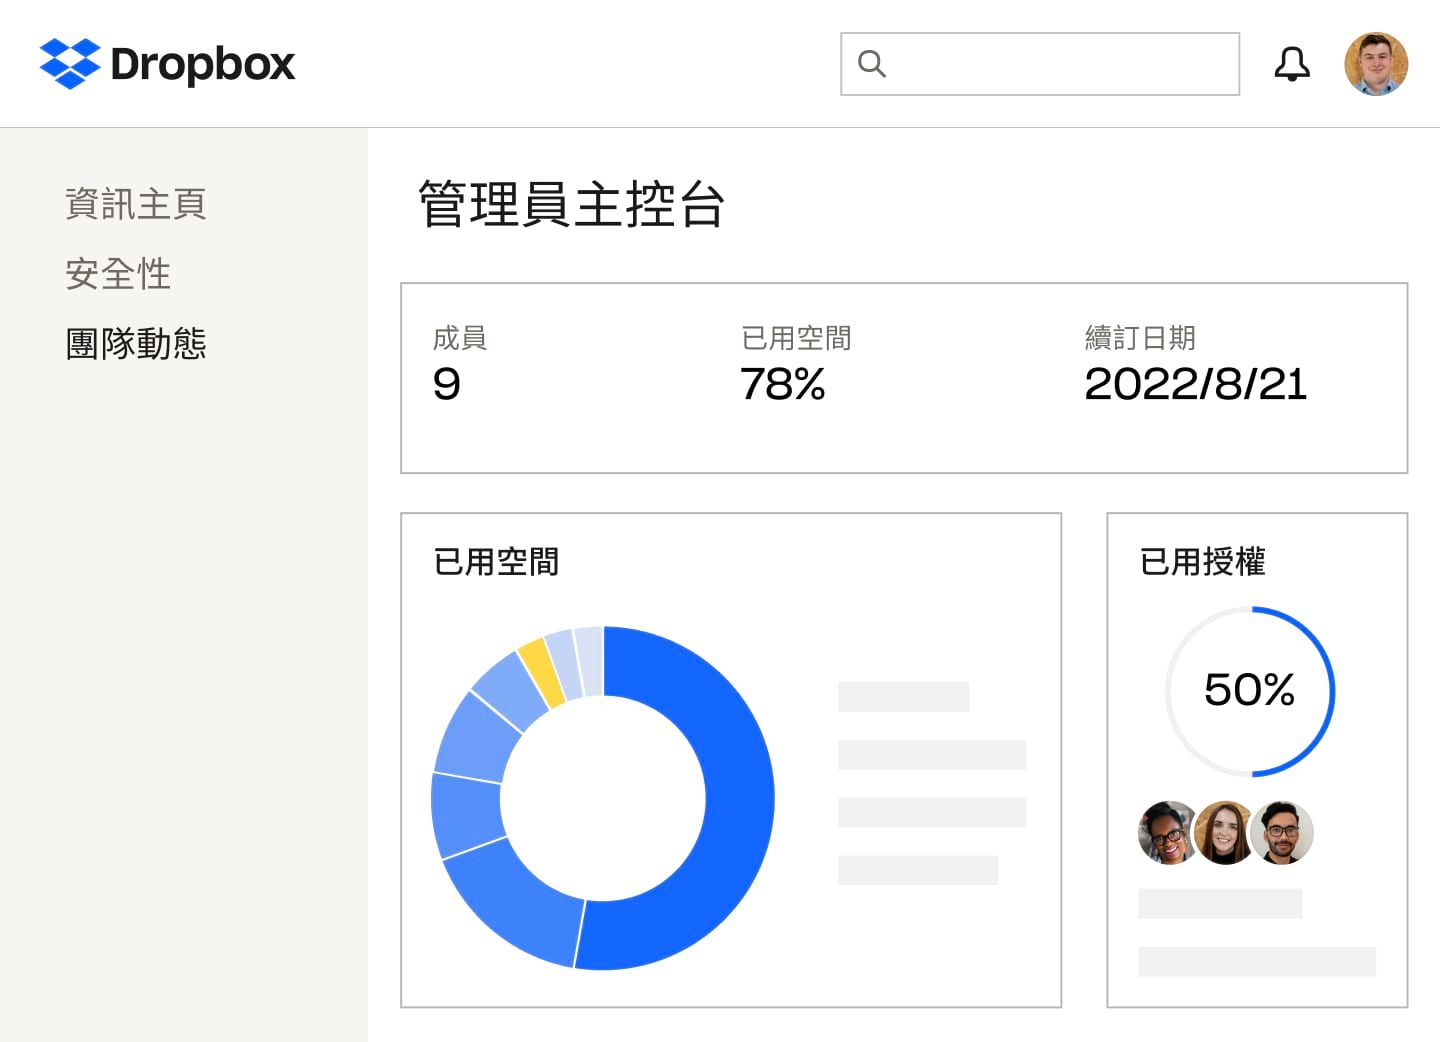 Dropbox 管理員主控台顯示成員數量、儲存空間百分比及使用的授權、訂購方案續訂日期，以及使用空間的藍黃色圓餅圖